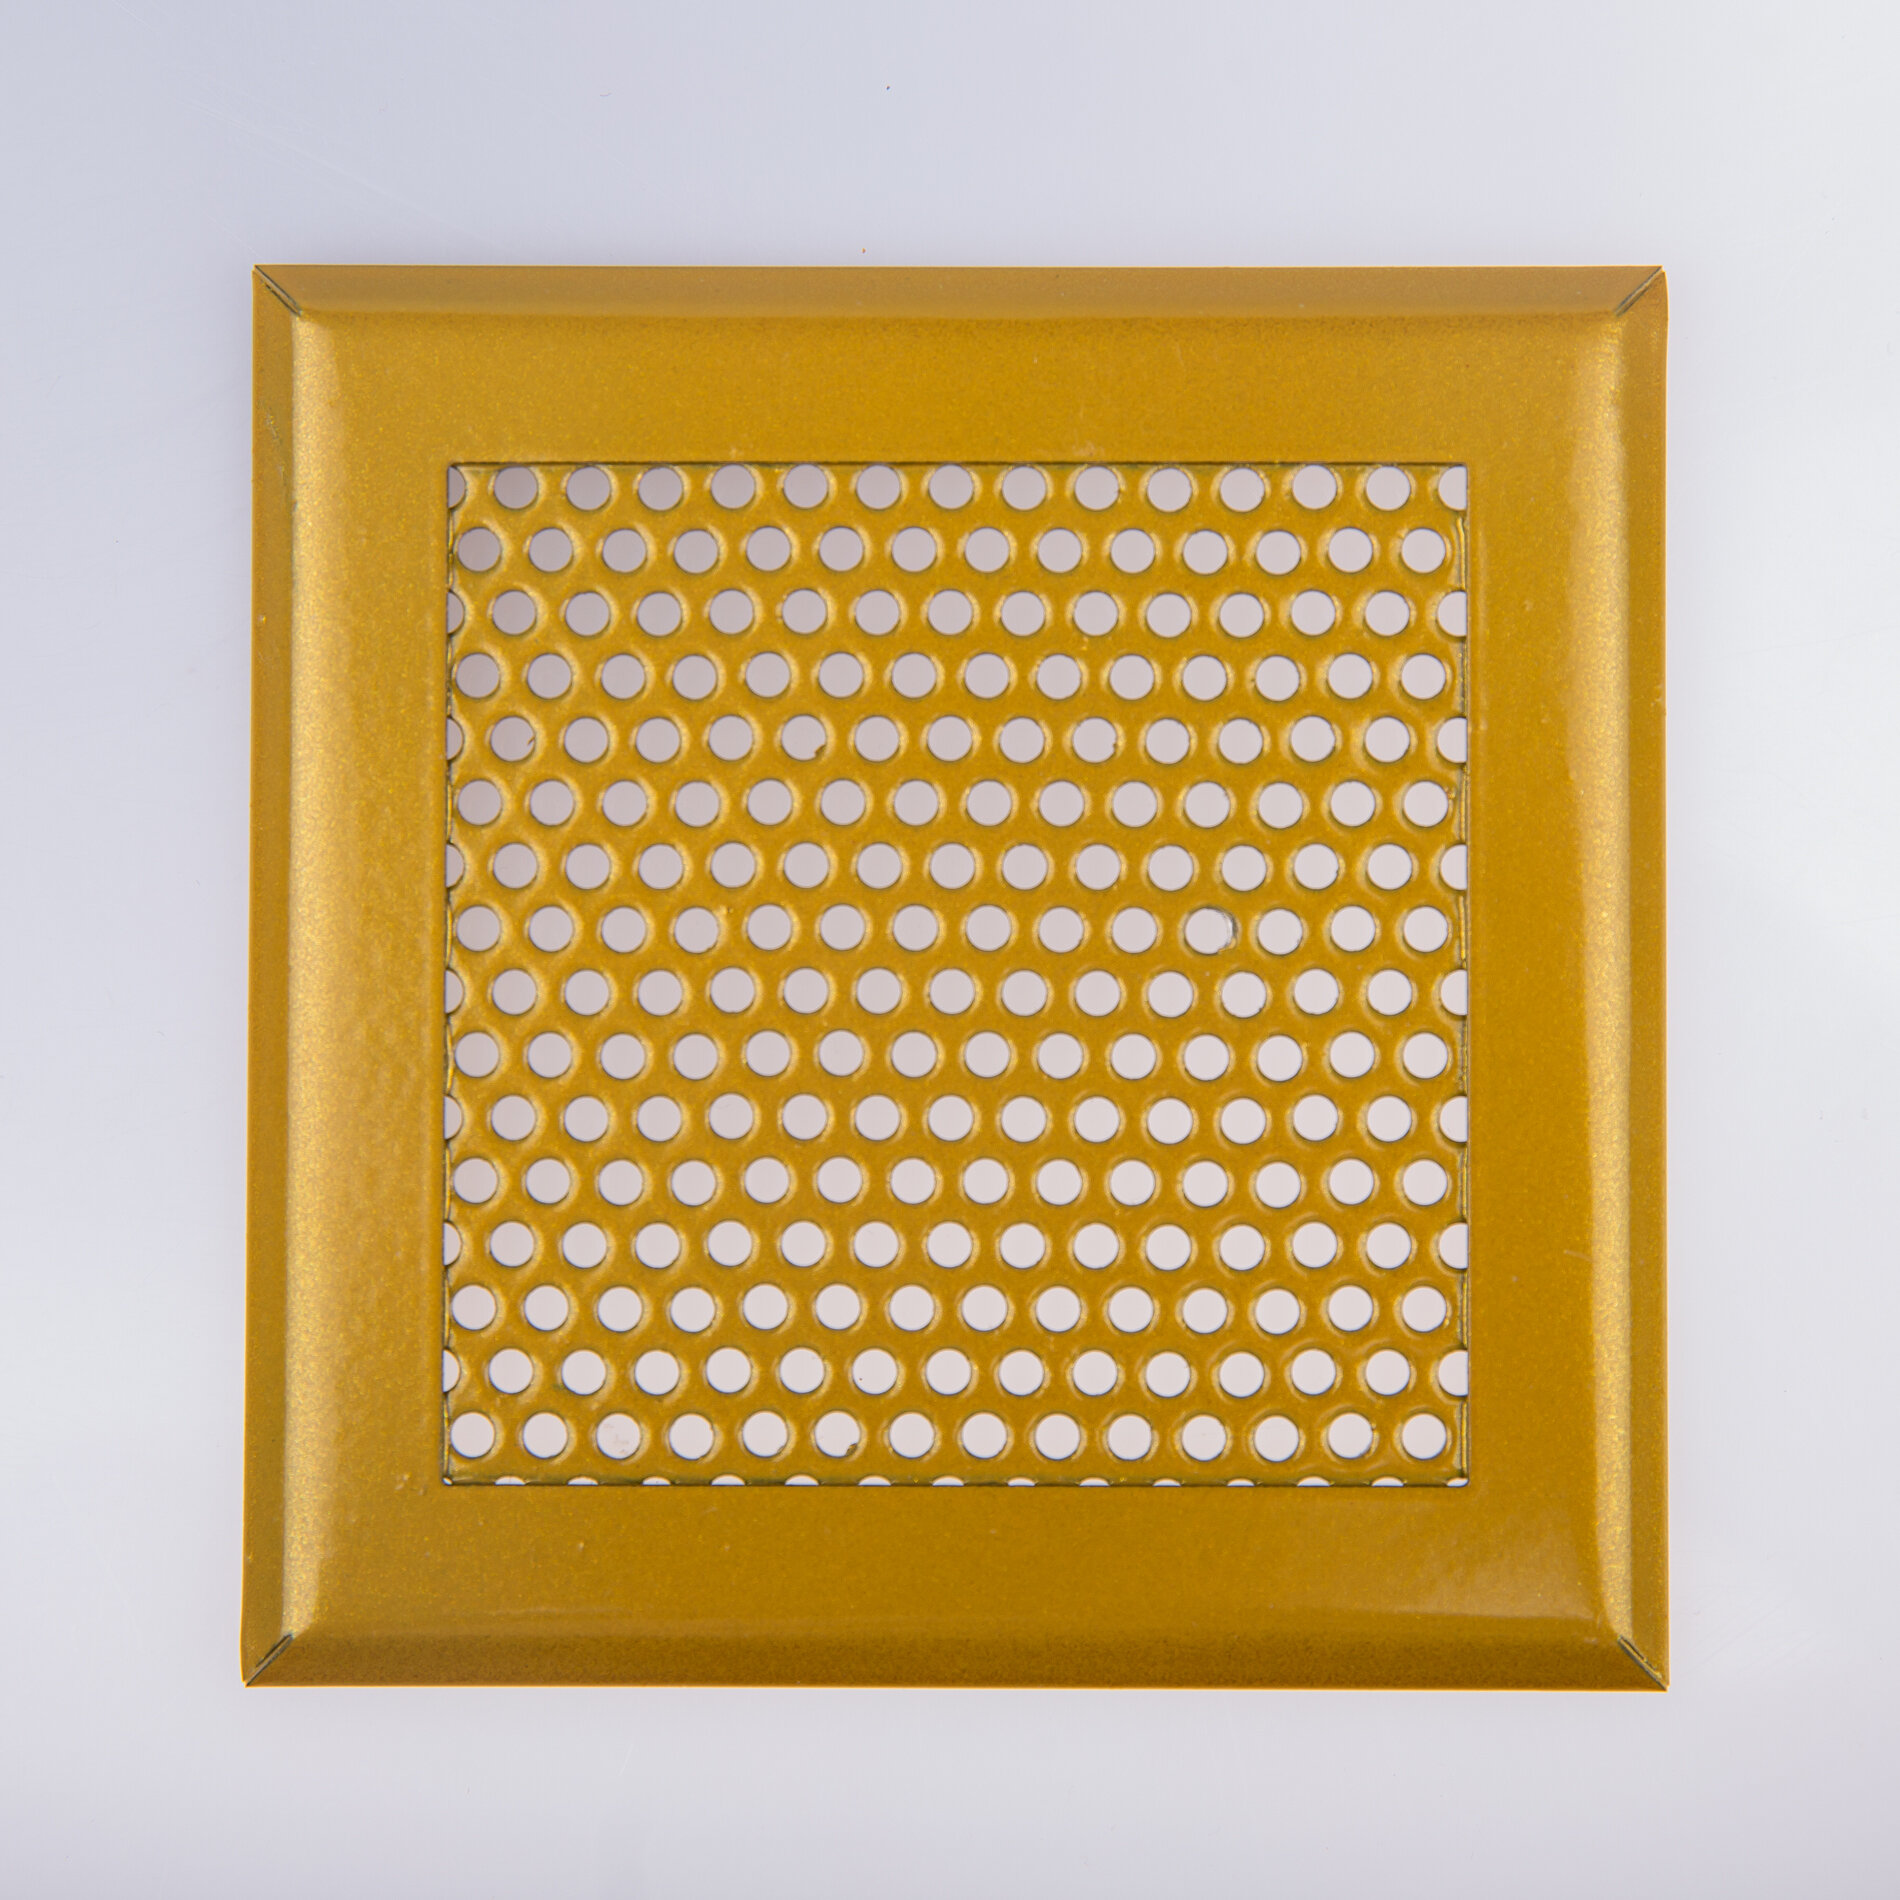 Вентиляционная решетка металлическая на магнитах 200х200мм, тип перфорации кружок (Rv 3-5), золотой